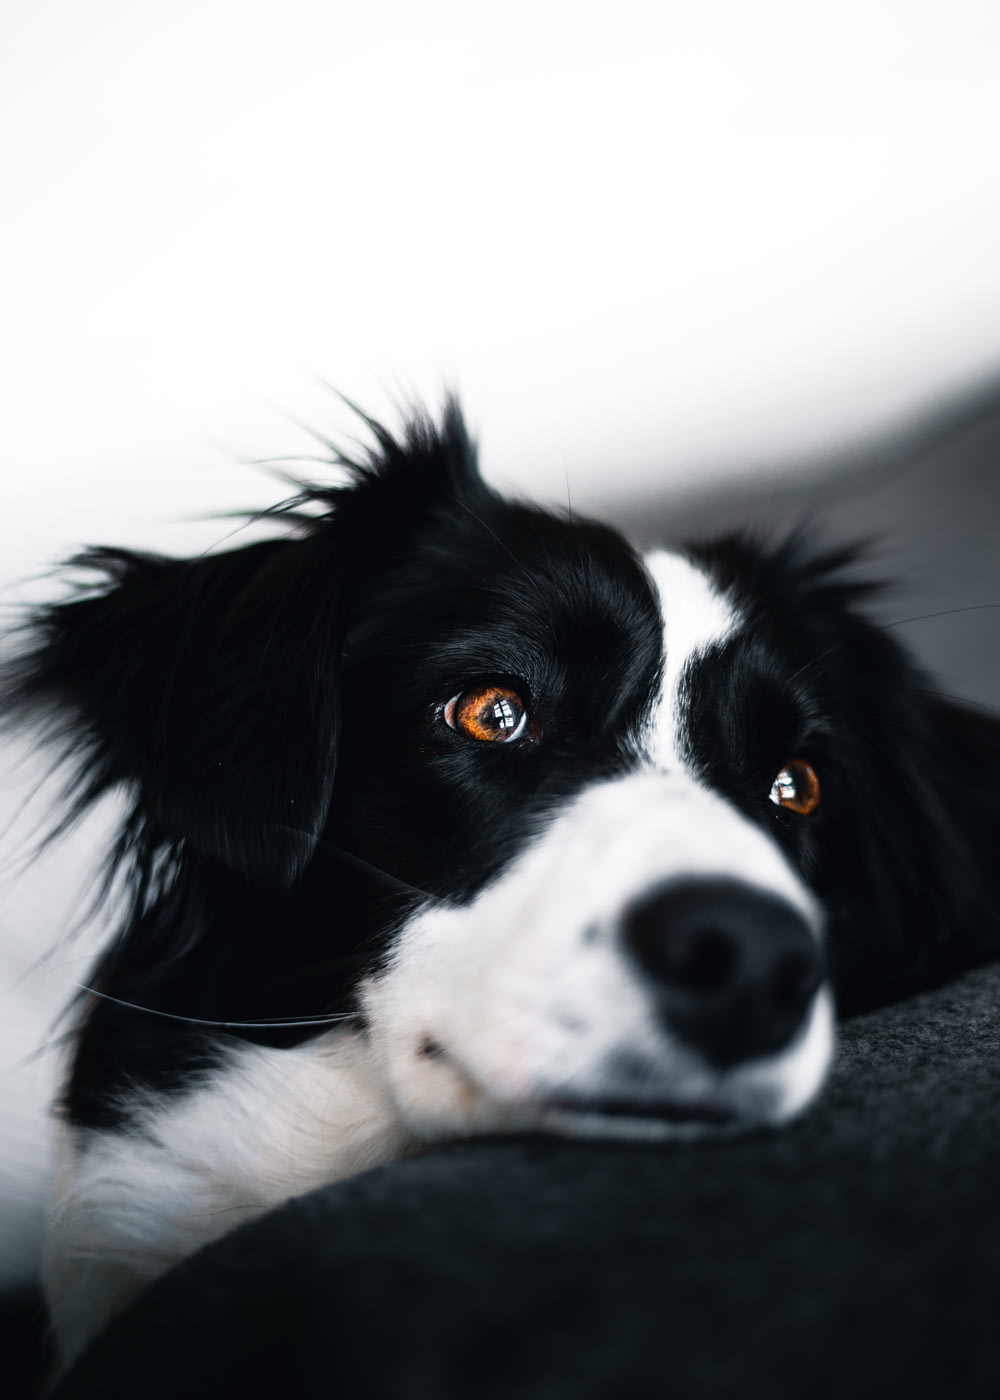 white and black dog lying on sofa